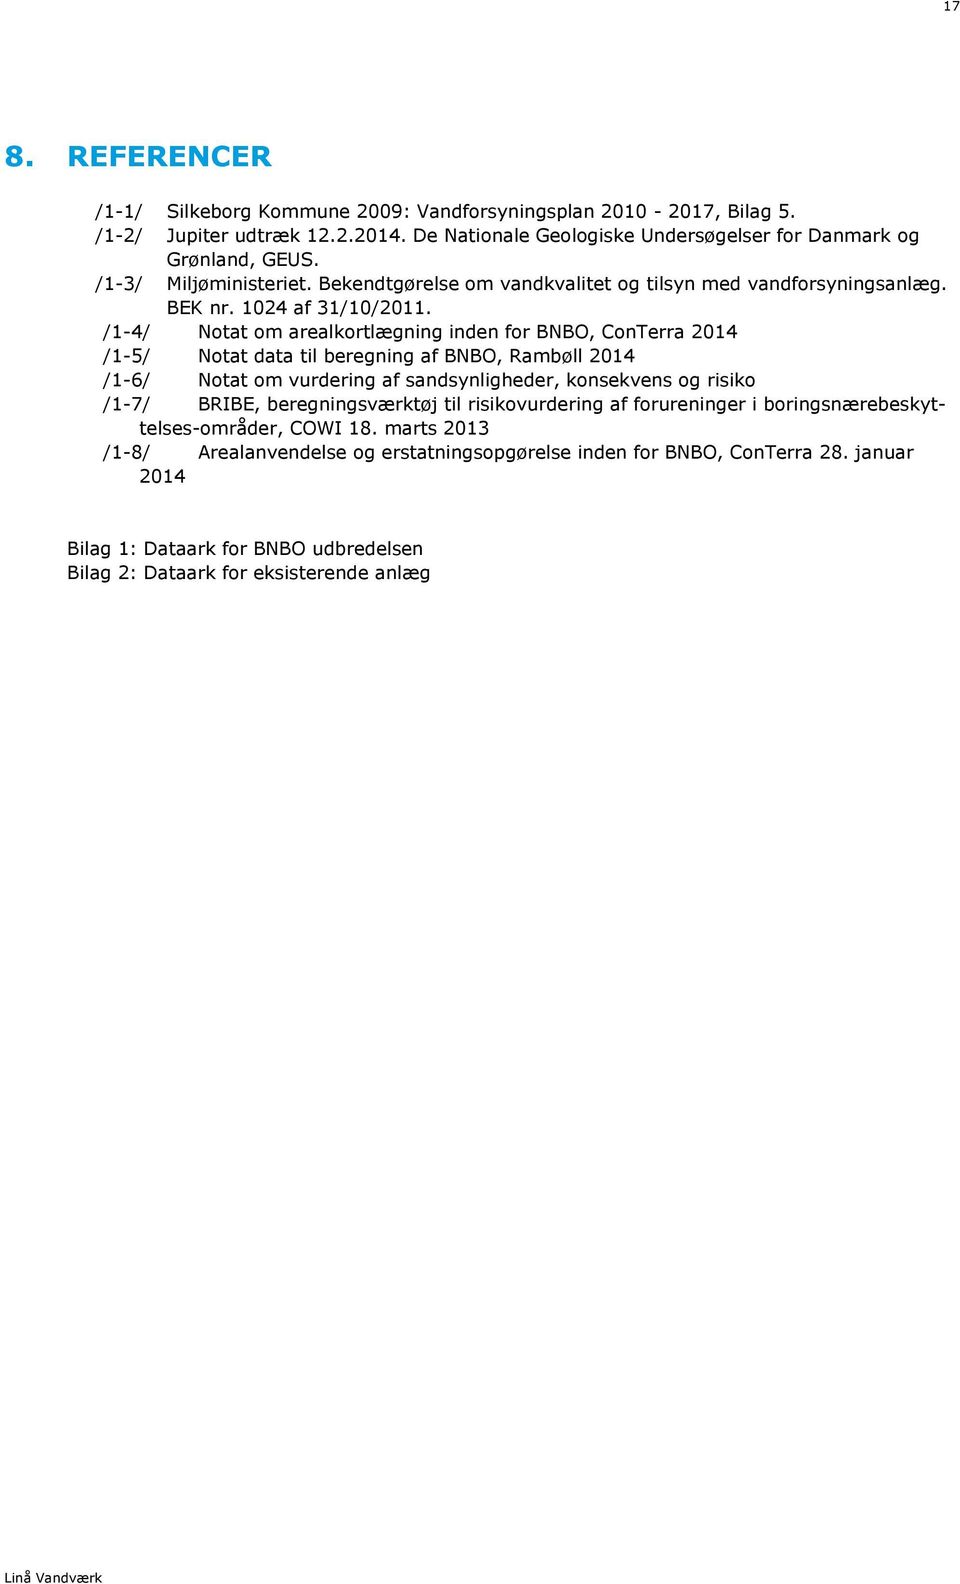 /1-4/ Notat om arealkortlægning inden for BNBO, ConTerra 2014 /1-5/ Notat data til beregning af BNBO, Rambøll 2014 /1-6/ Notat om vurdering af sandsynligheder, konsekvens og risiko /1-7/